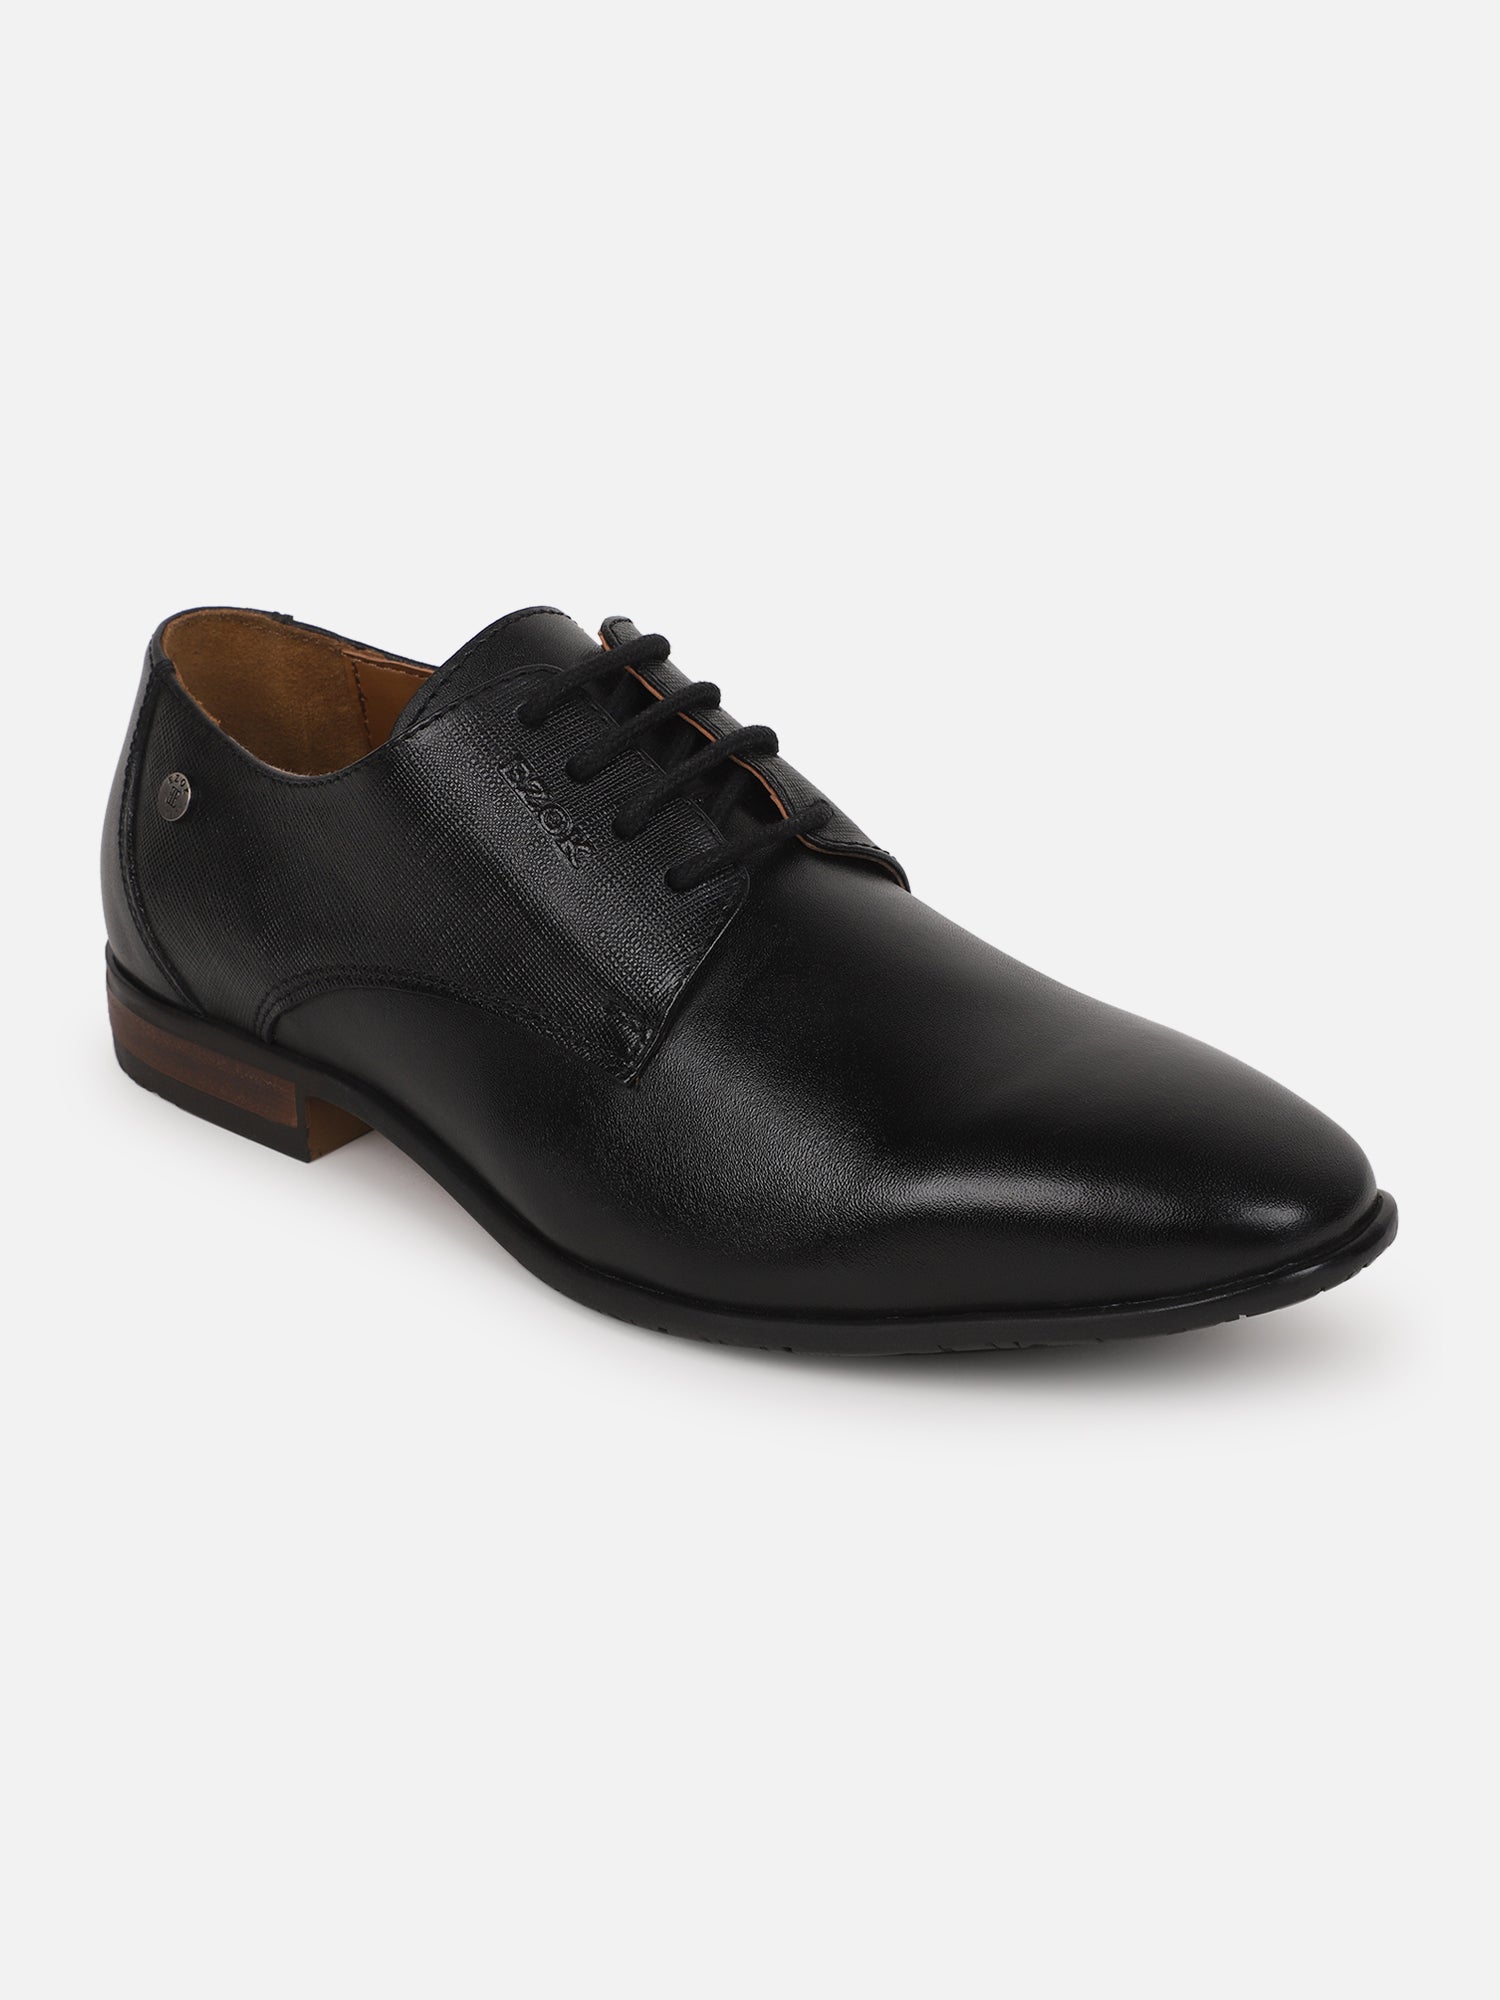 Ezok Men Formal Leather Shoes ( Black )